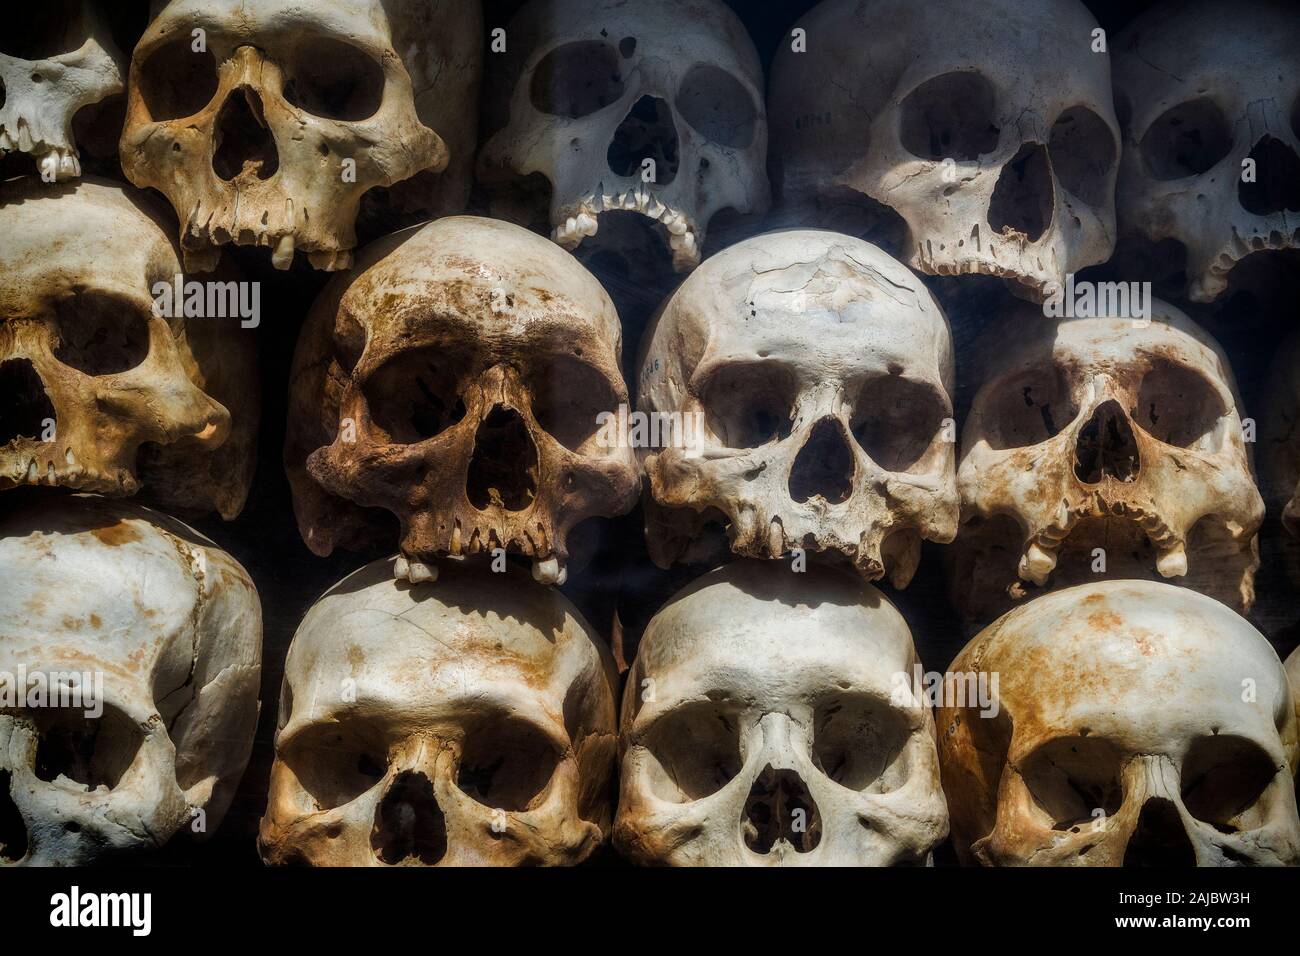 Cráneos humanos de las víctimas de los Jemeres rojos apilados en los campos de exterminio de Choeung Ek Memorial, Phnom Penh, Camboya. Foto de stock